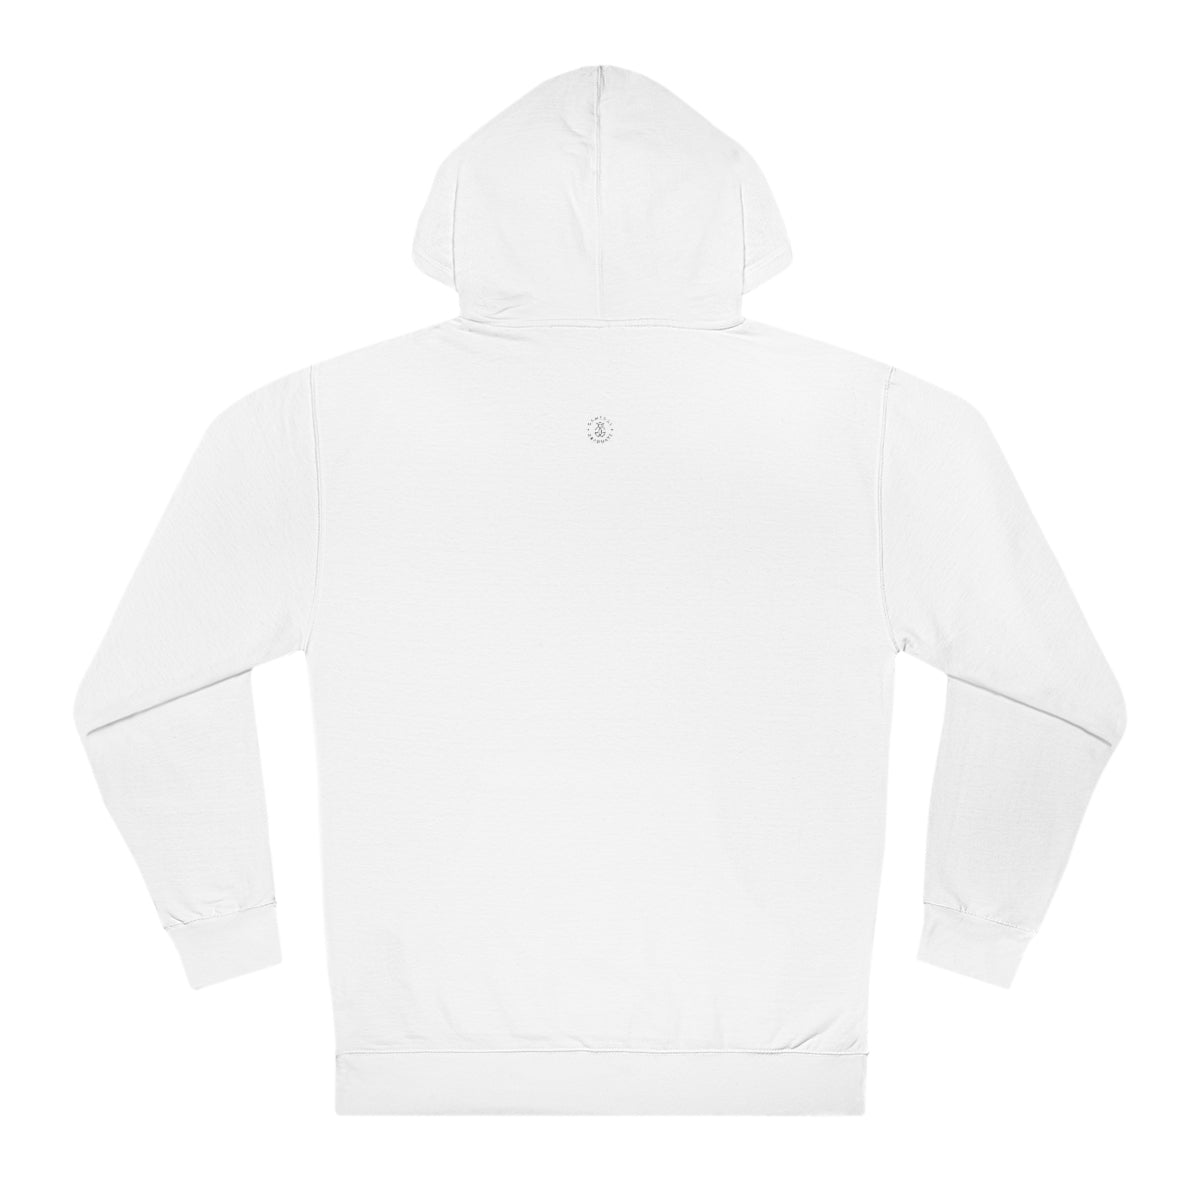 Purdue Hooded Sweatshirt - GG - ITC